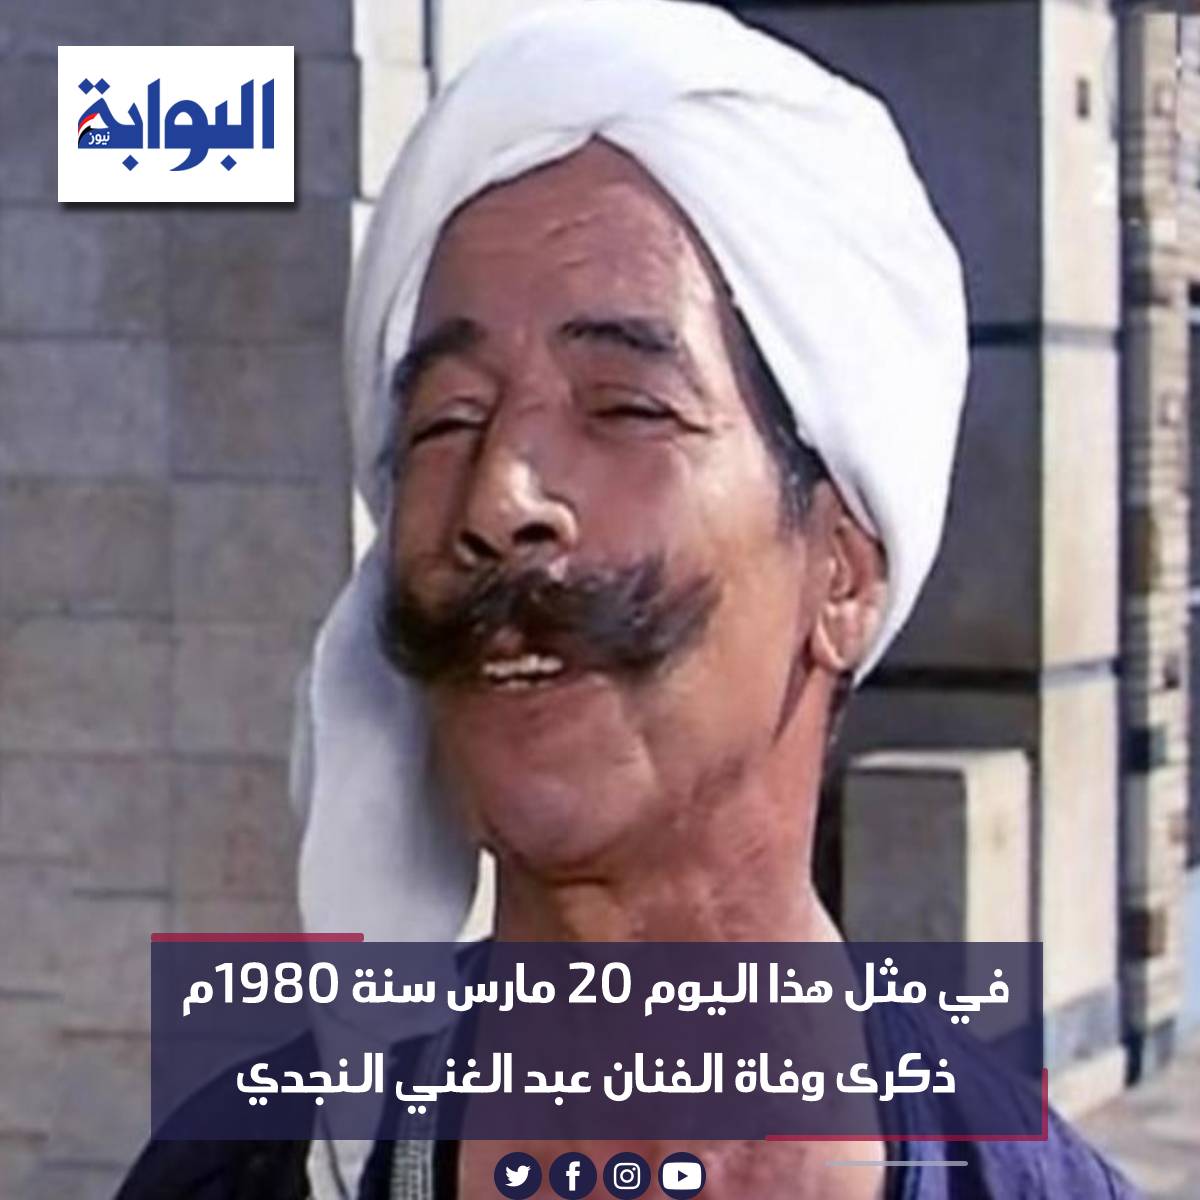 في مثل هذا اليوم 20 مارس سنة 1980م ذكرى وفاة الفنان عبد الغني النجدي